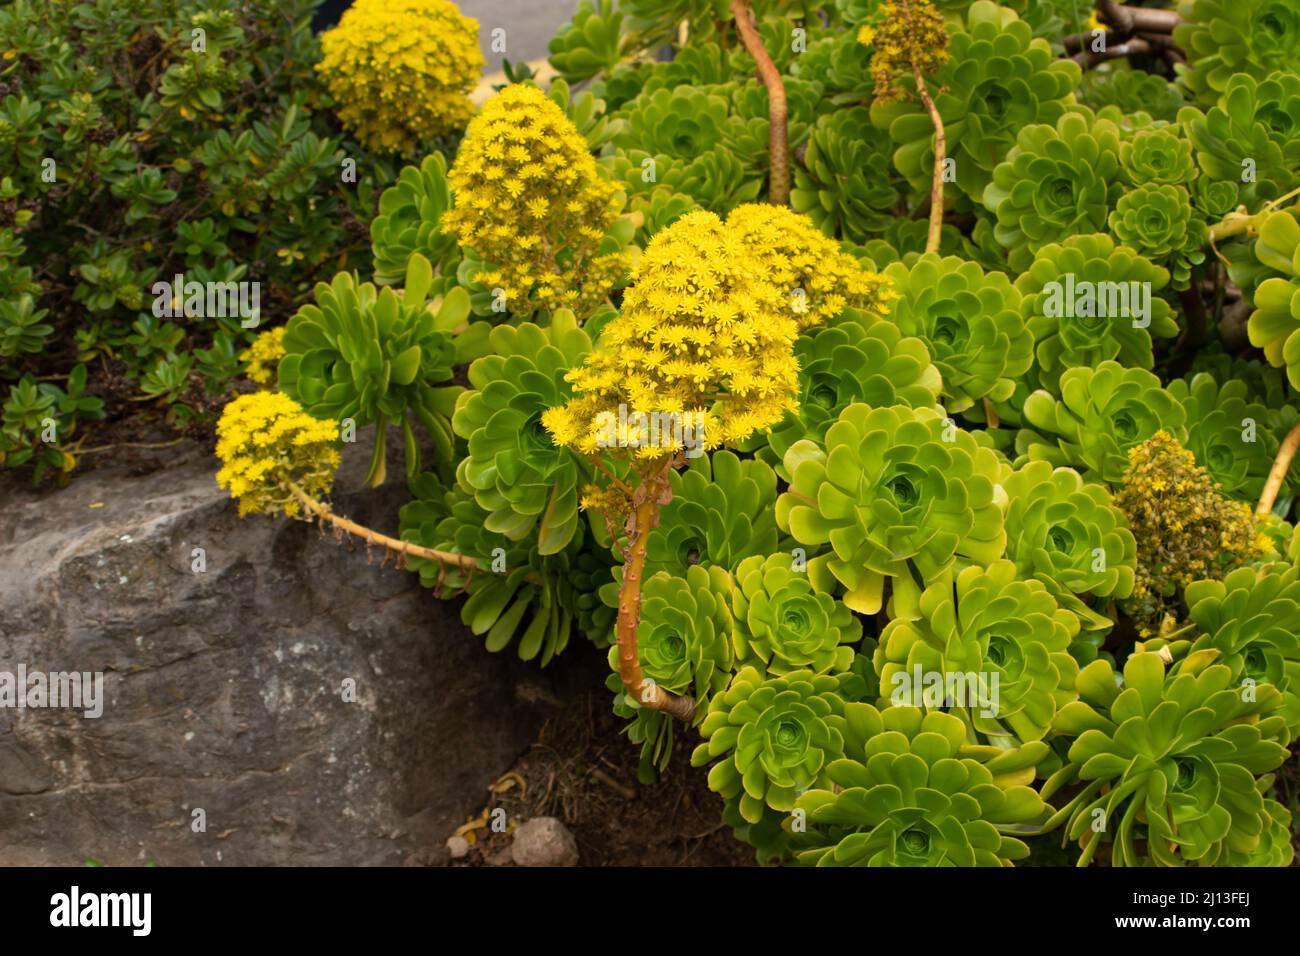 Aeonium arboreum leuchtend gelbe Blüten im Frühling. Baum-Aeonium blühende Pflanzen mit konischen Blütenständen Stockfoto